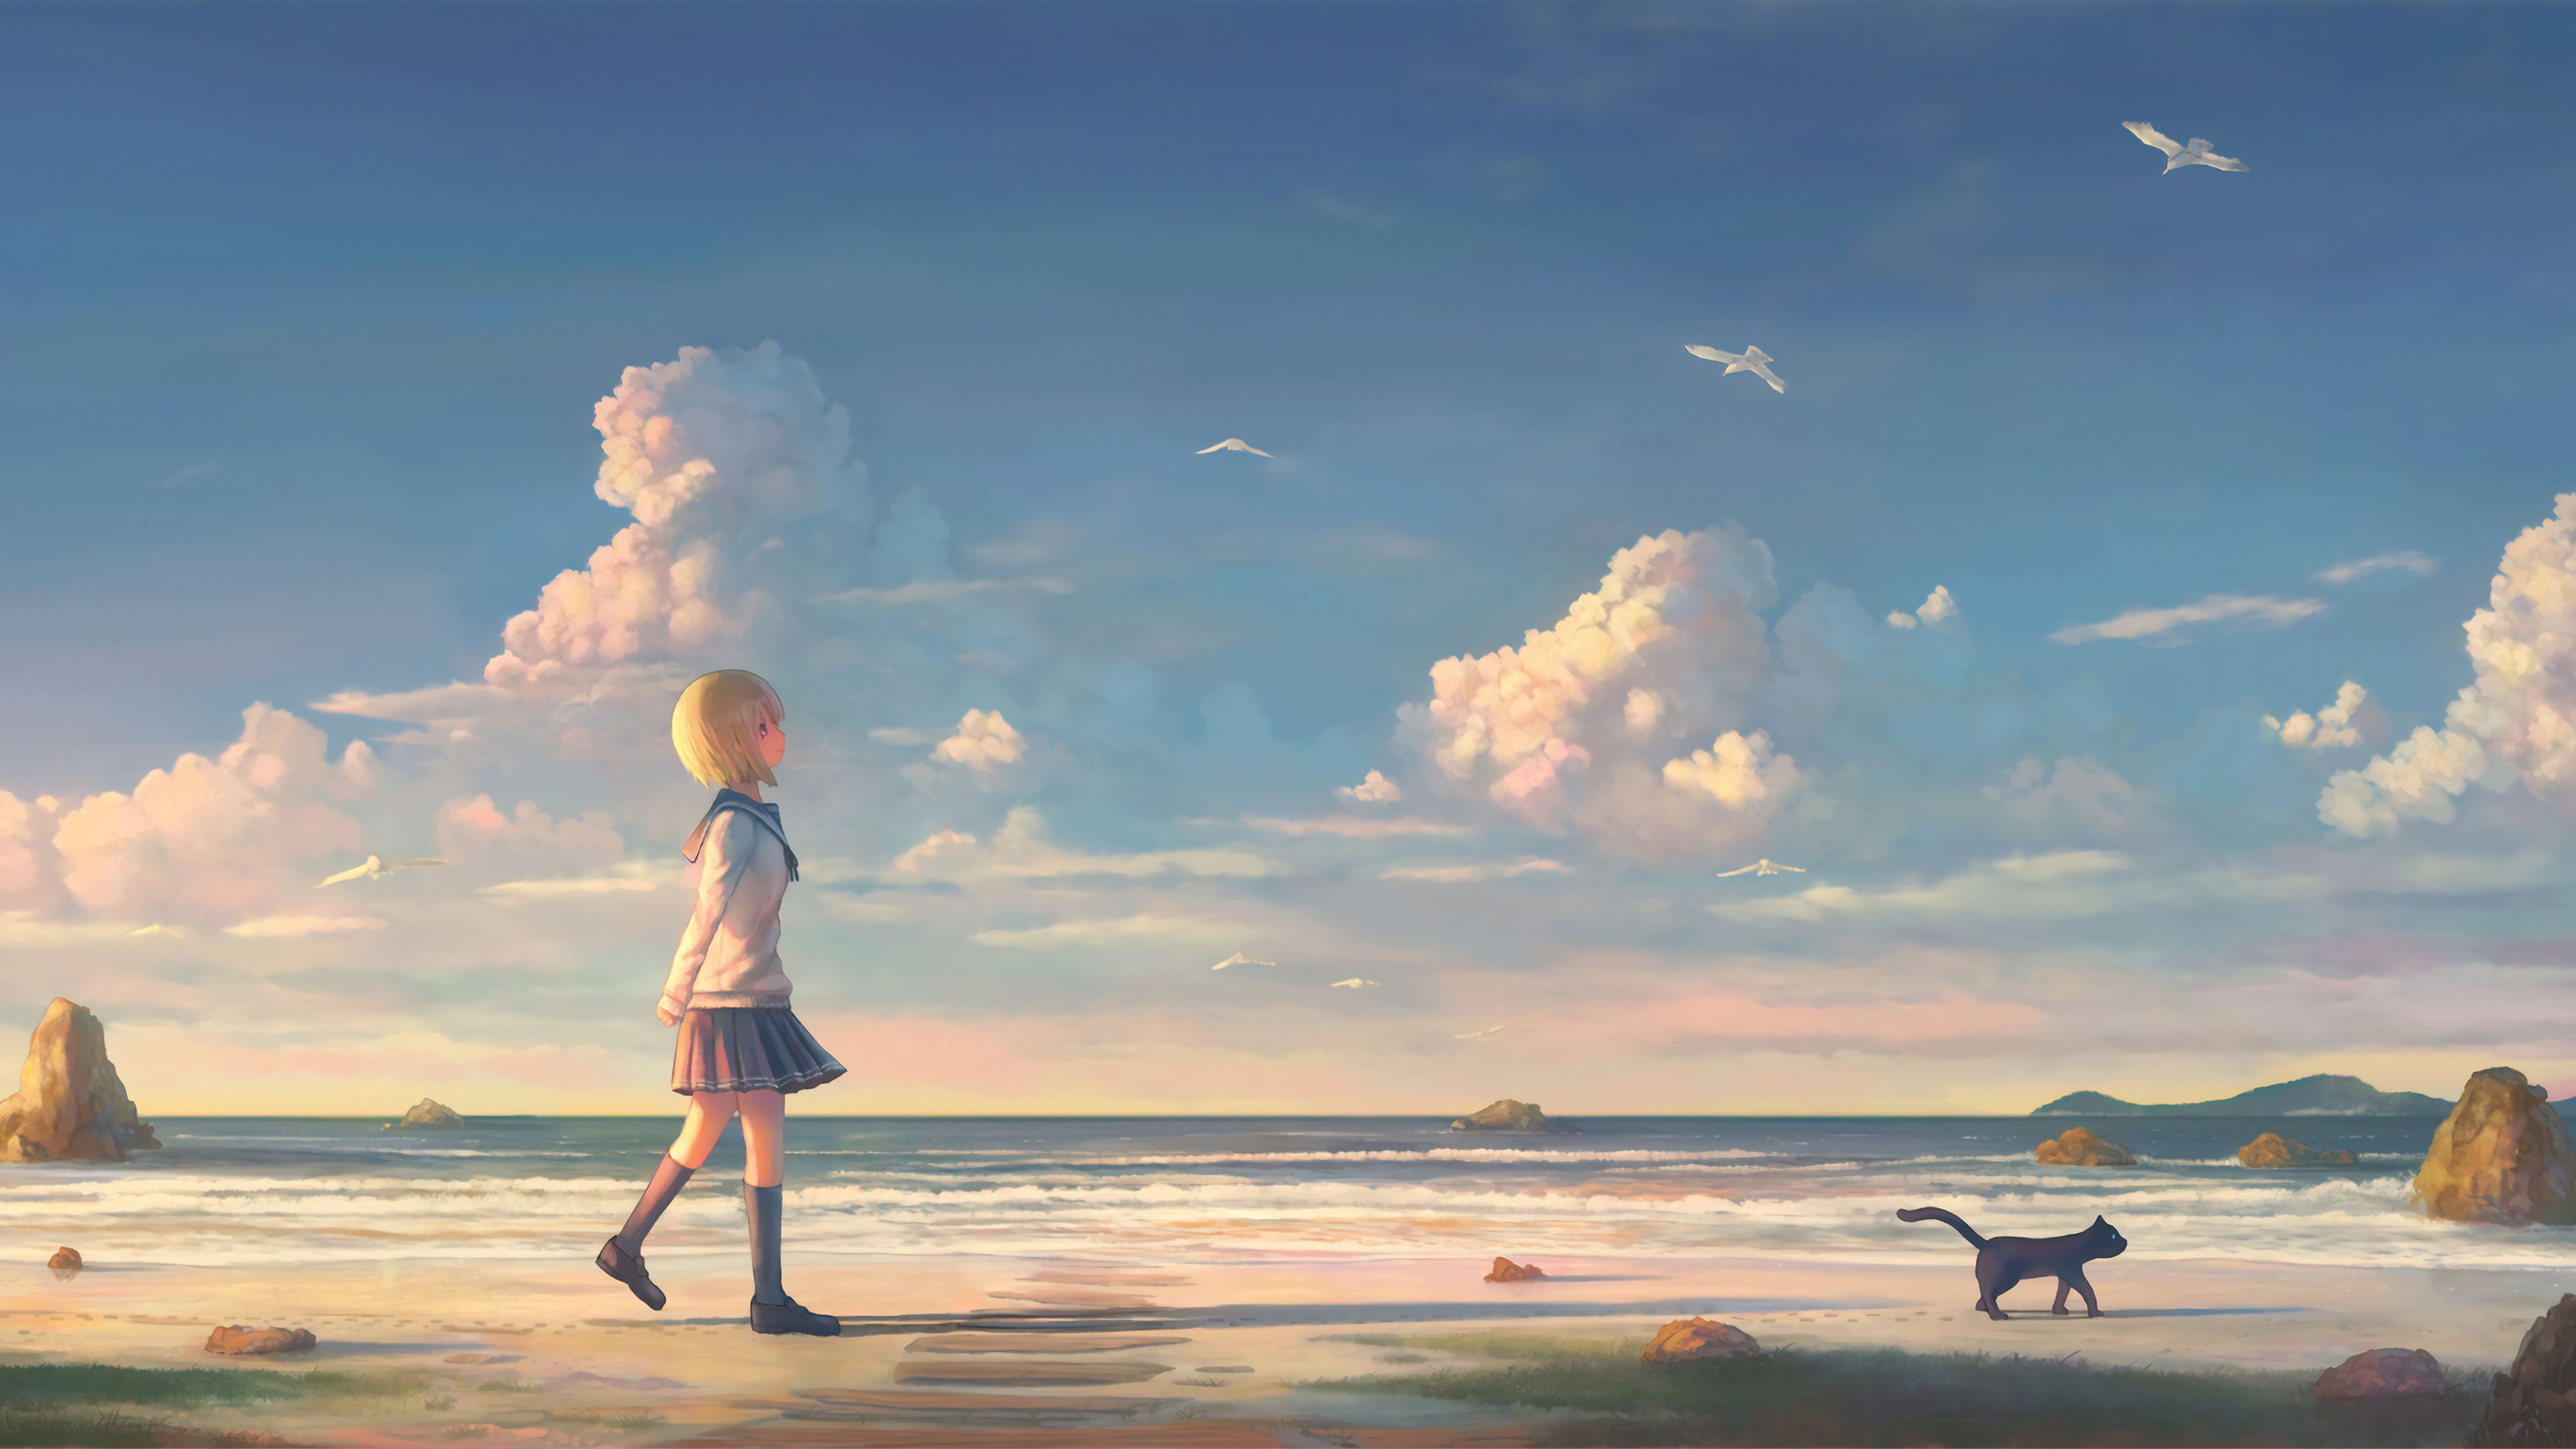 Wallpaper 4k Anime Girl Walking On Beach With Cat 4k Wallpaper